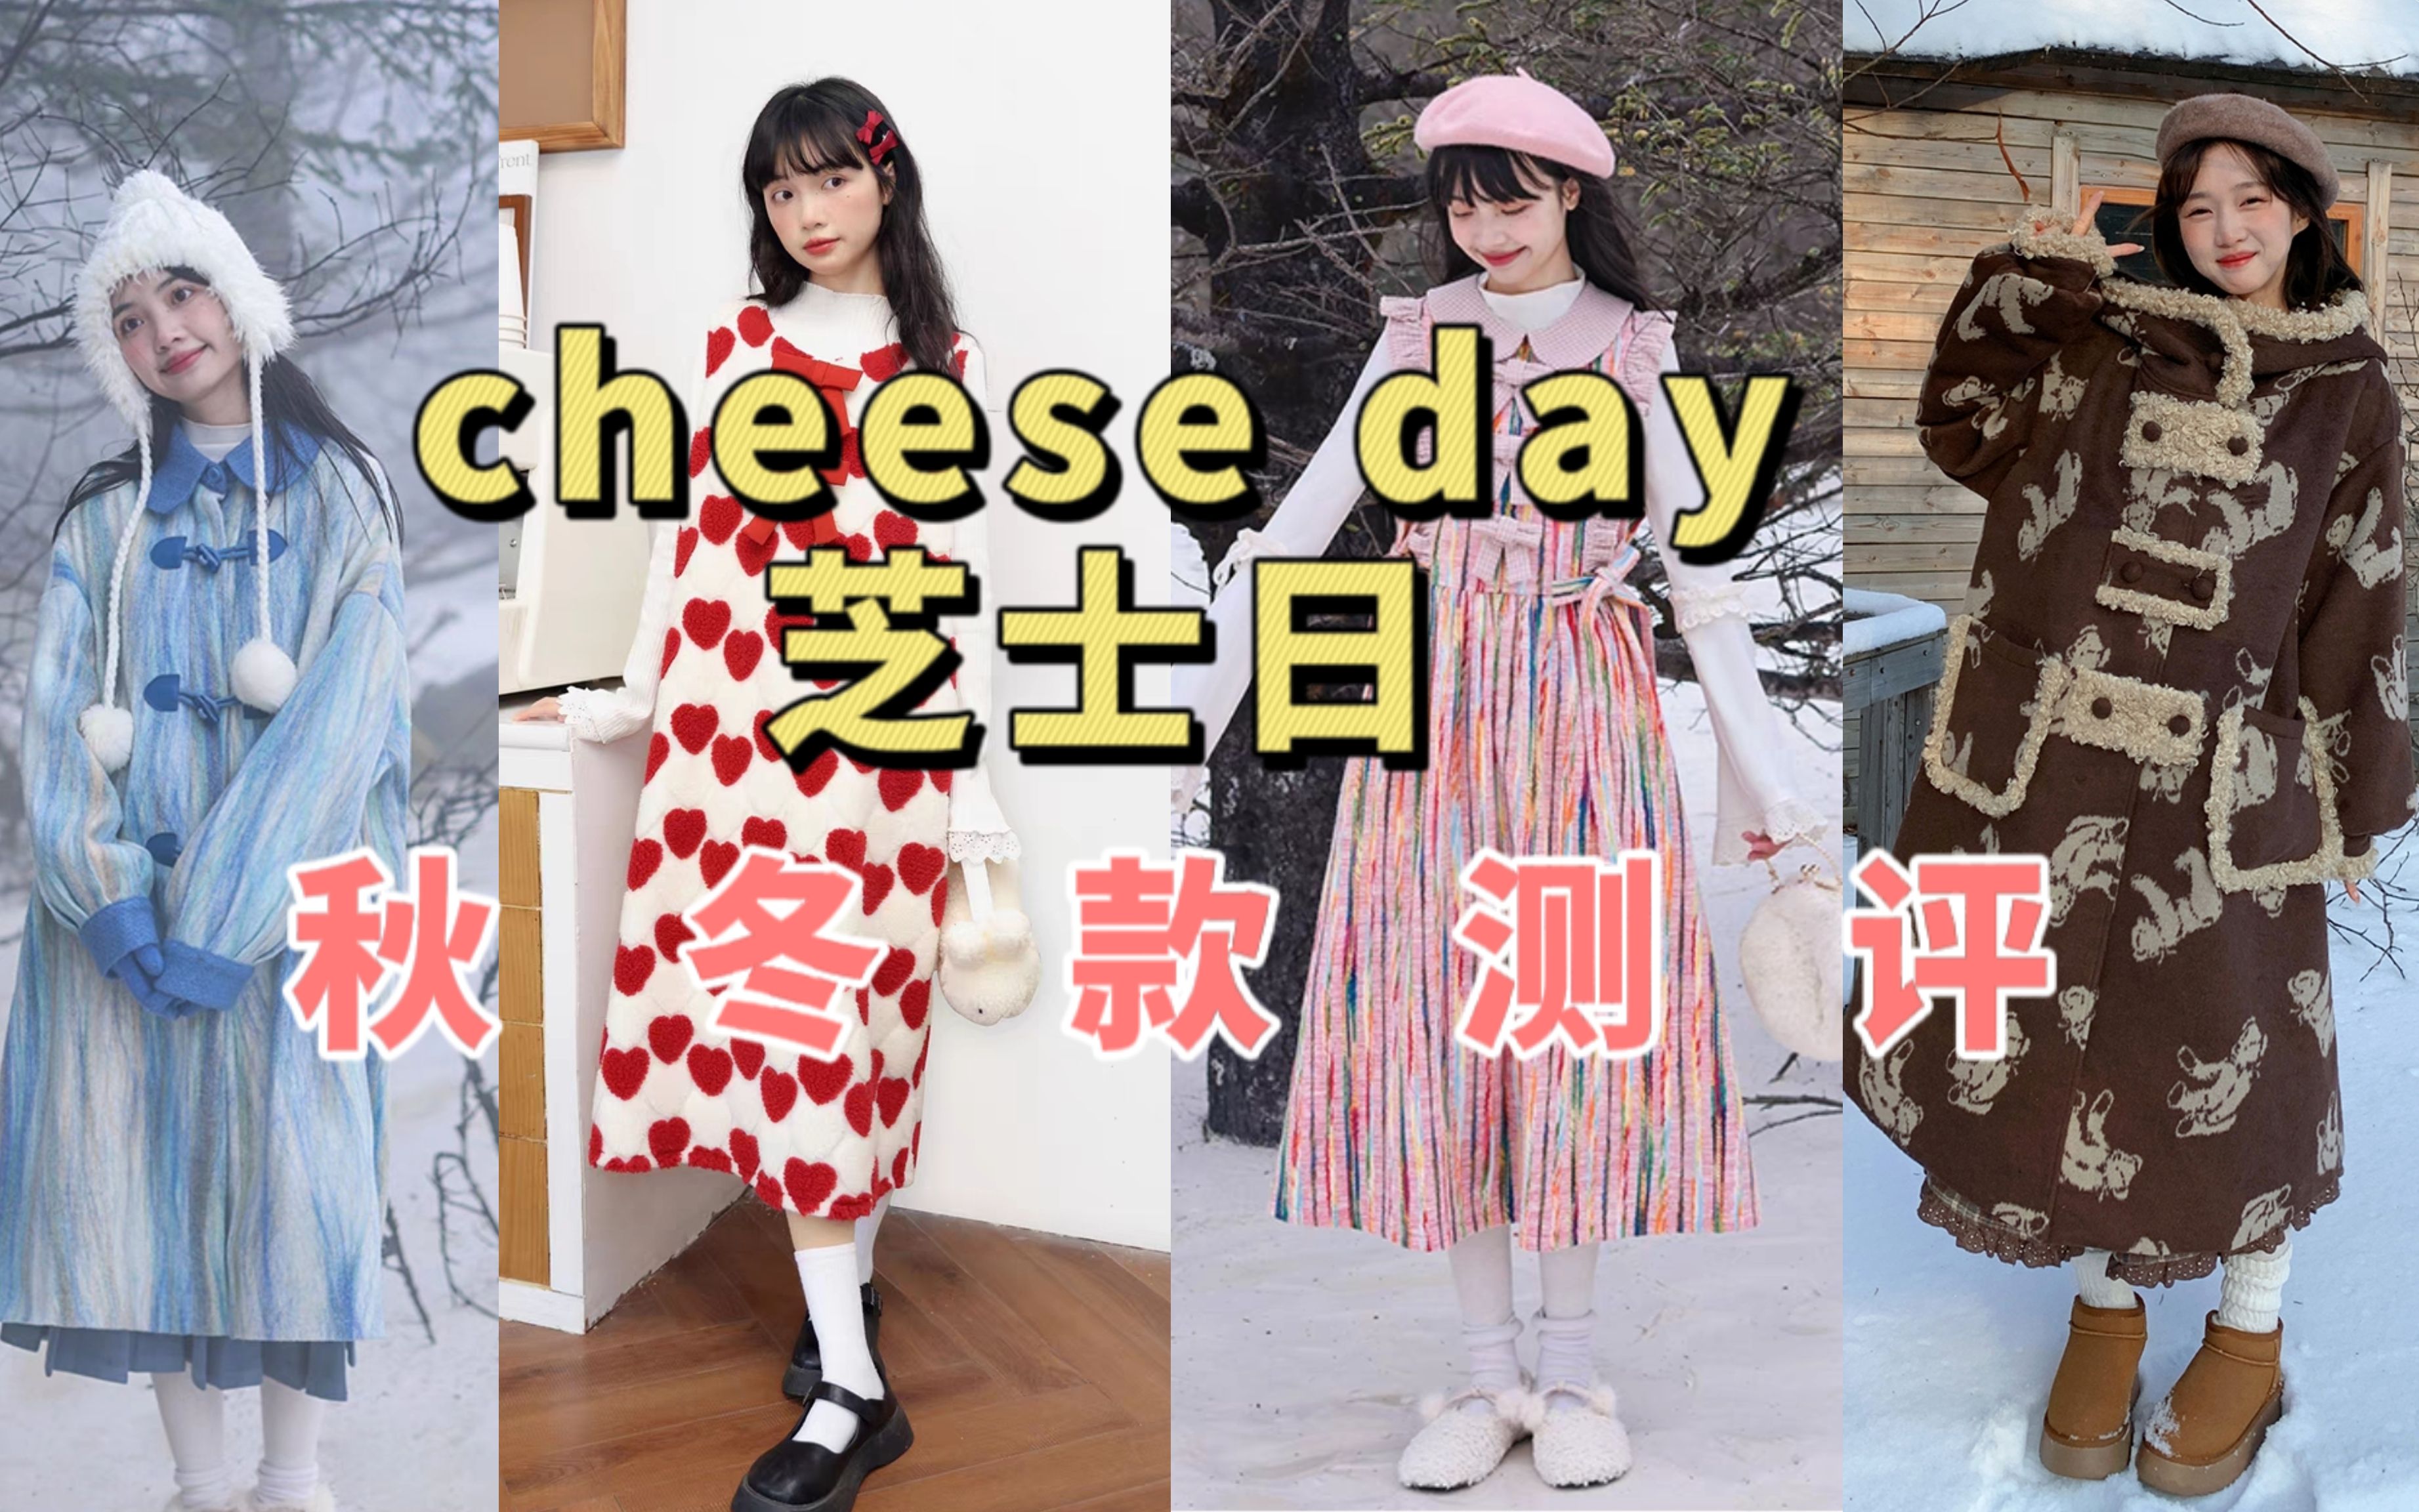 探店测评7《cheese day芝士日》| 学院风女装秋冬款实测~